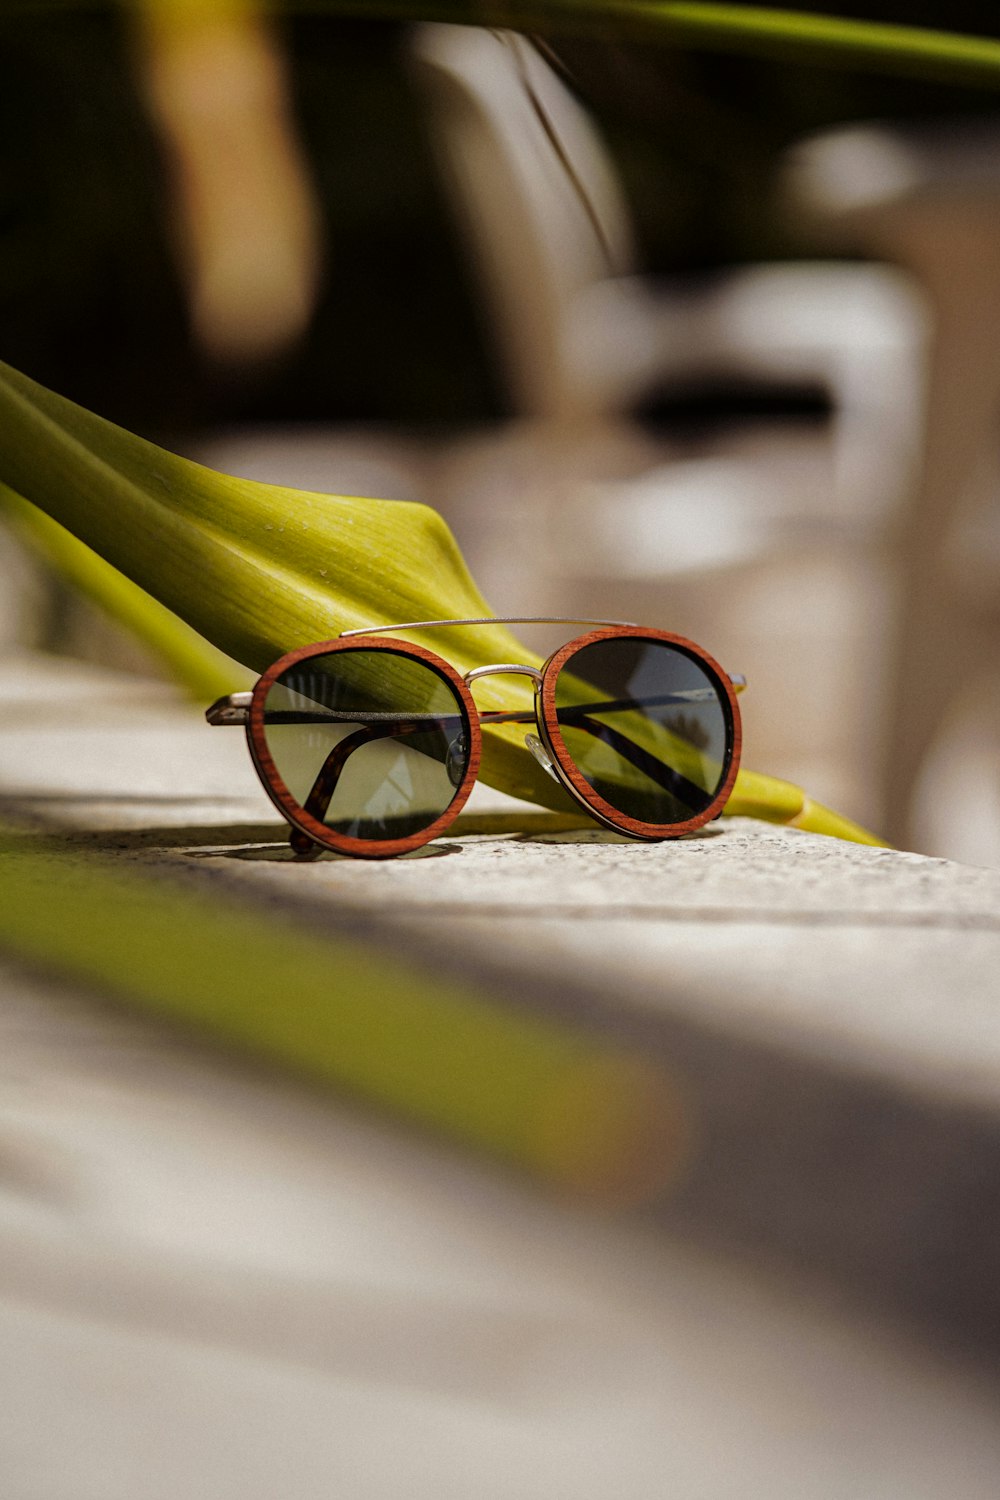 Foto Gafas de sol con montura amarilla sobre superficie blanca – Imagen  Fotografía de producto gratis en Unsplash